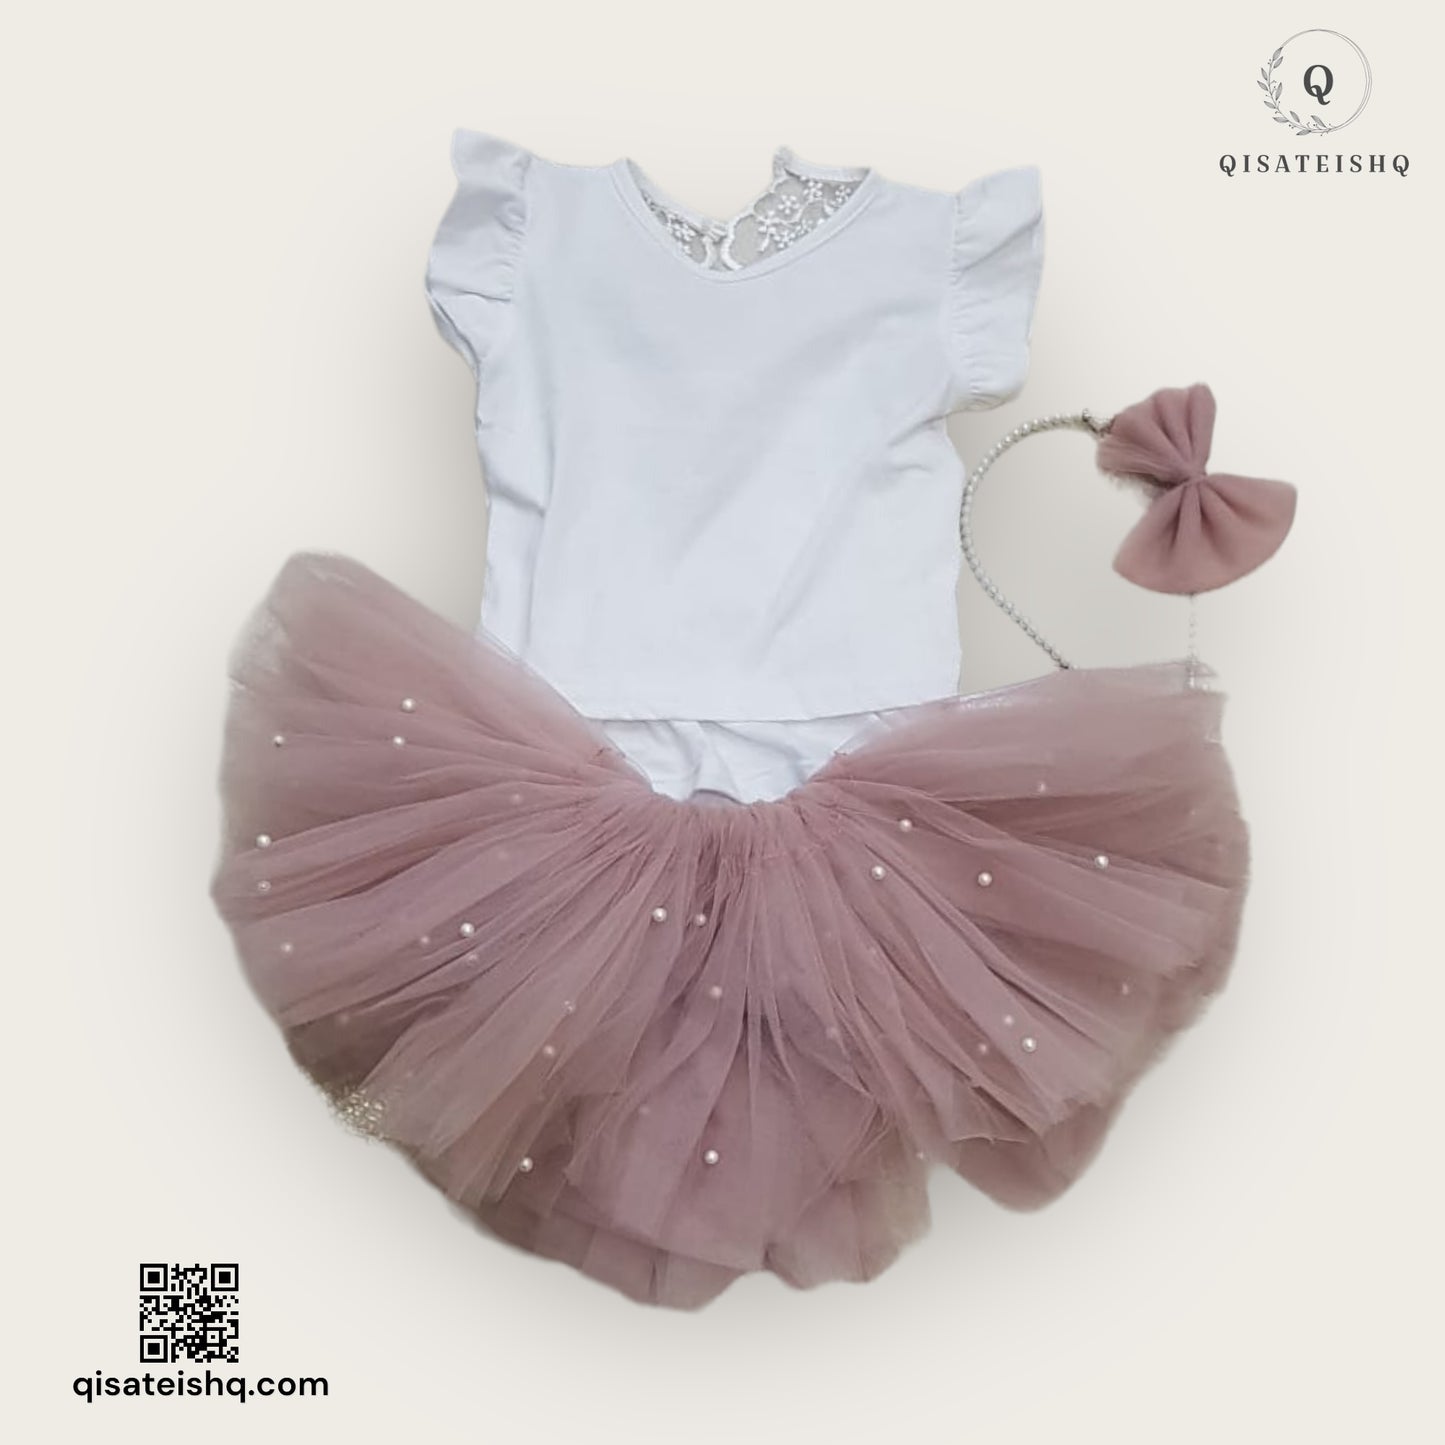 طقم فستان للأطفال بتصميم أنيق بالألوان الأبيض والوردي